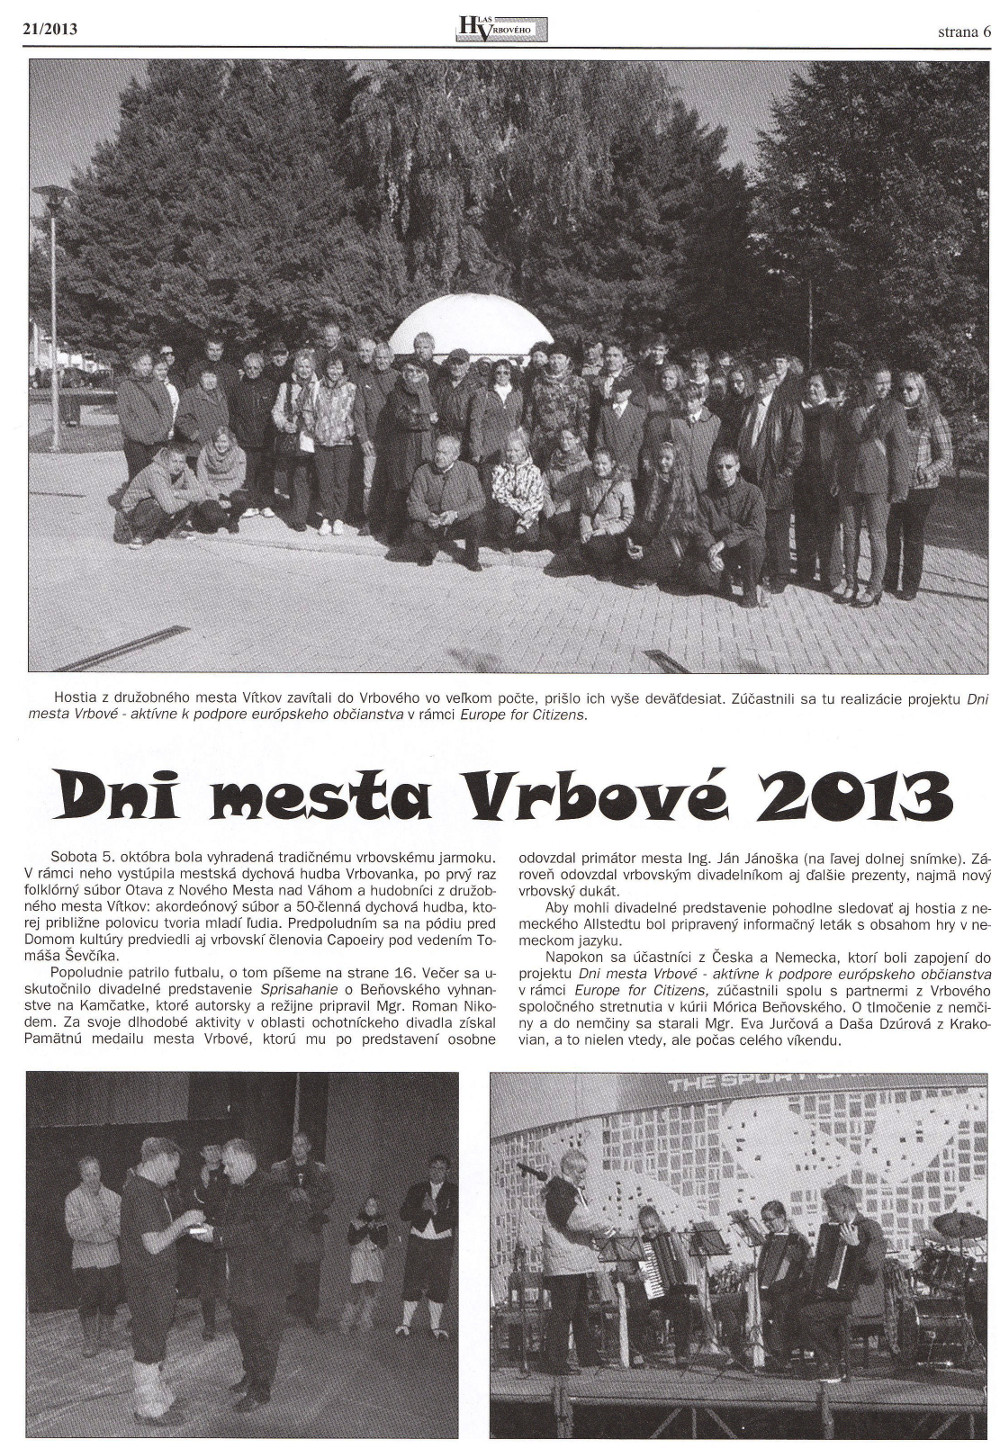 Hlas Vrbového 21/2013, strana 6